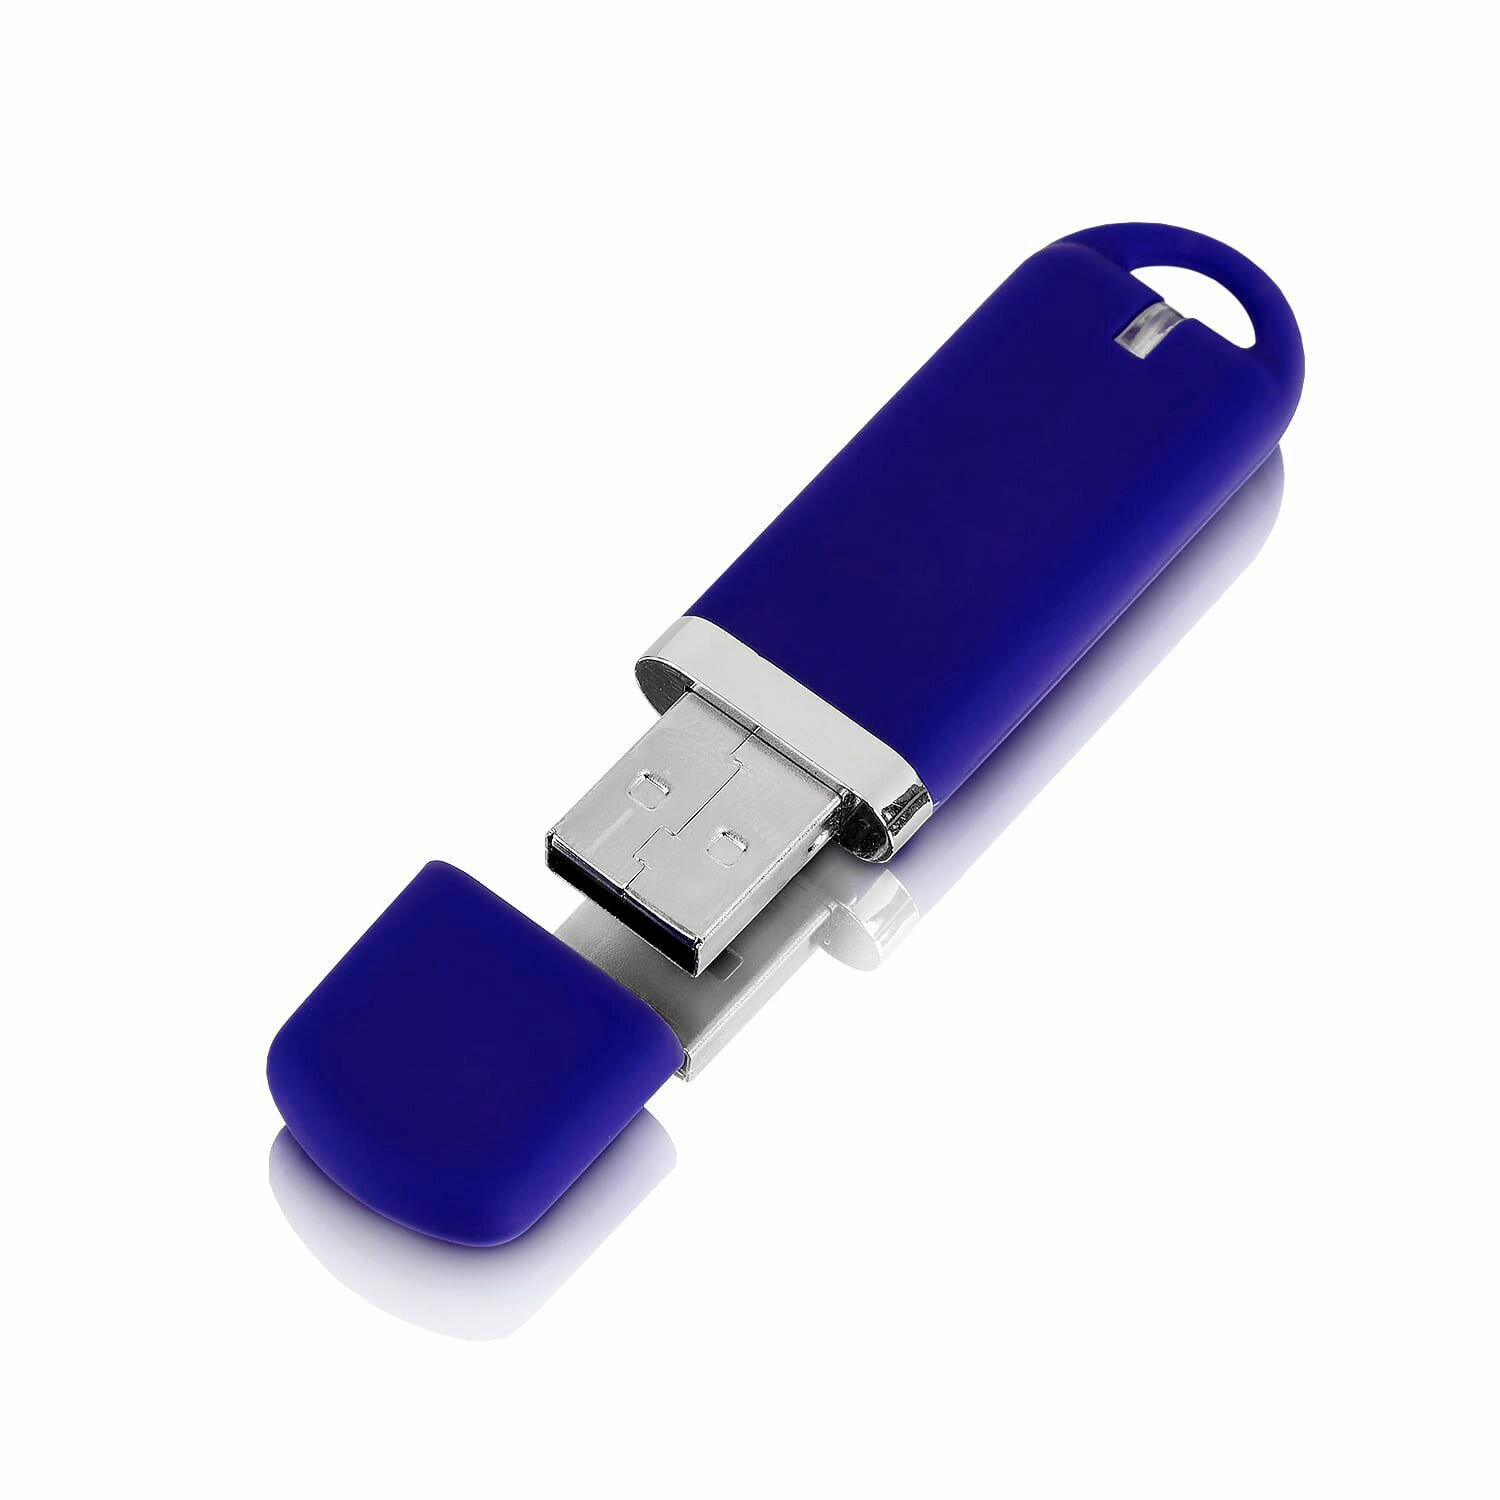 Флешка Memo, 8 ГБ, темно-синяя, USB 2.0, арт. F34